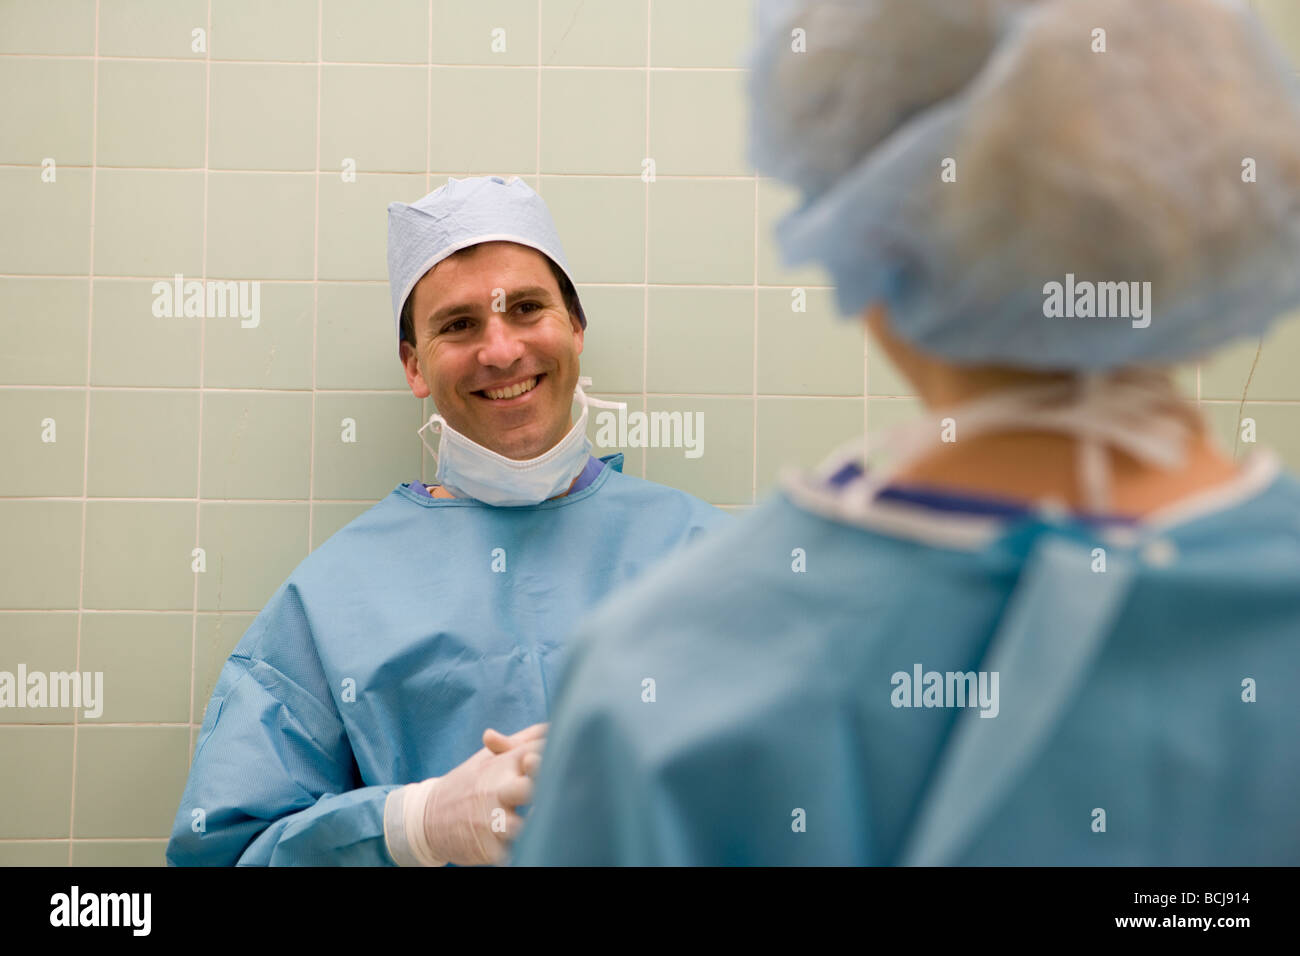 Kaukasische männlichen Chirurg/Arzt in blauen chirurgische Peelings gelehnt grünen Fliesen zu Fuß, mit zweiter Person zu sprechen. Stockfoto